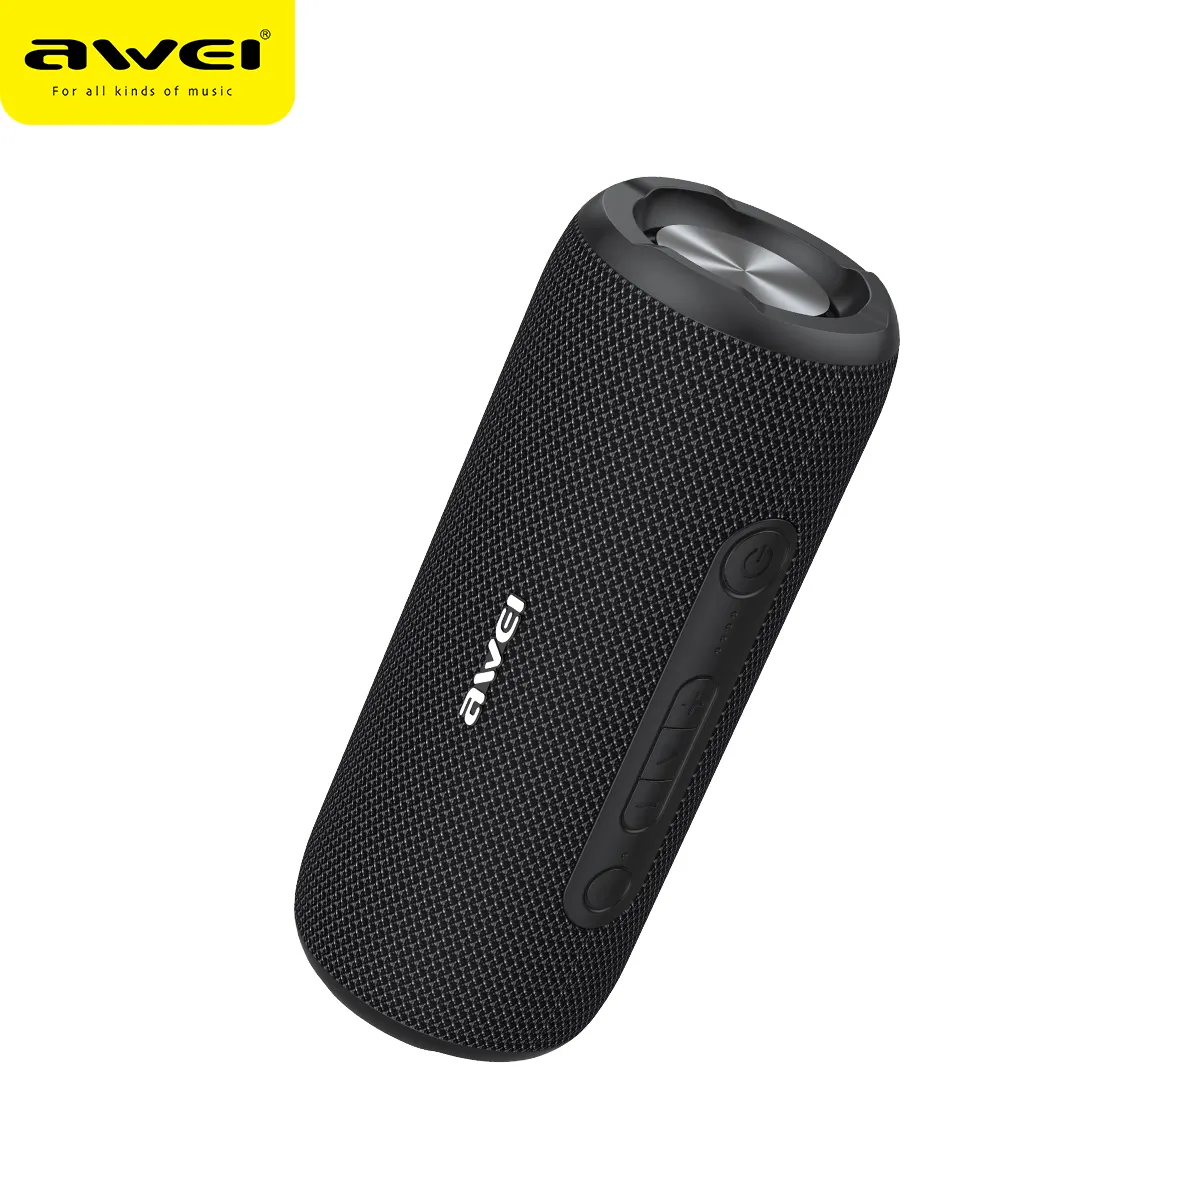 AWEI Y669 Speaker nirkabel portabel, Speaker Bluetooth portabel IPX7 tahan air 30W